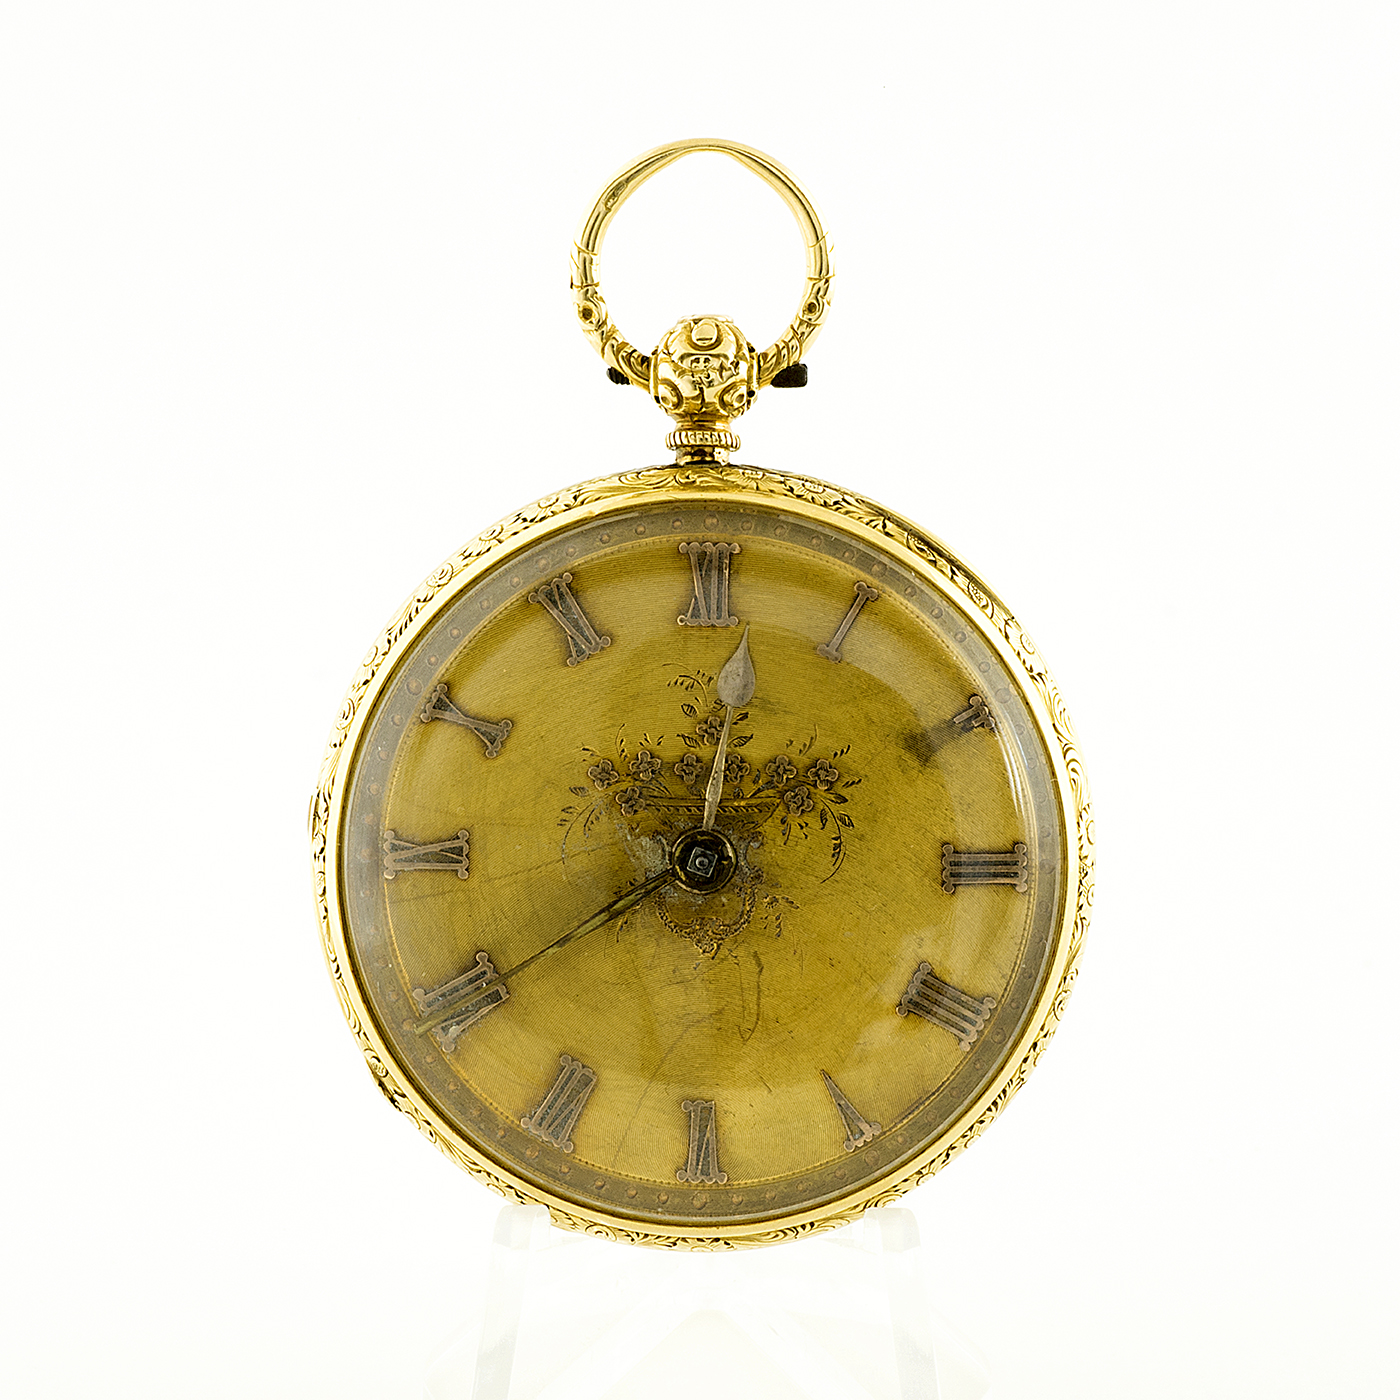 Owen & Owens. Liverpool. Reloj de Bolsillo para caballero, Lepine, Half Fusee (Semicatalino). Año 1856.